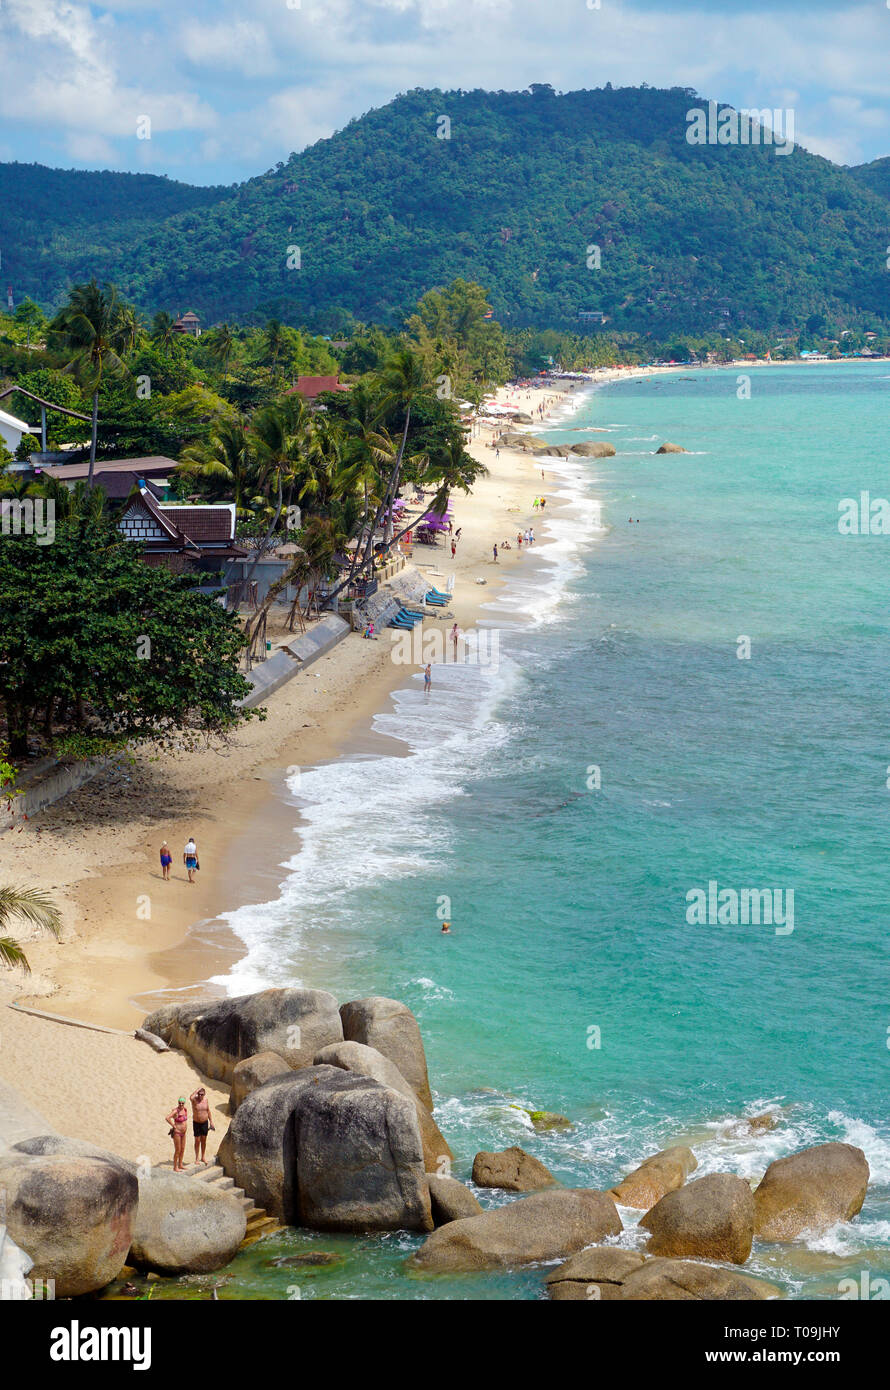 Der Lamai Strand auf Koh Samui, Golf von Thailand, Thailand | Lamai Beach, overview, Koh Samui, Gulf of Thailand, Thailand Stock Photo